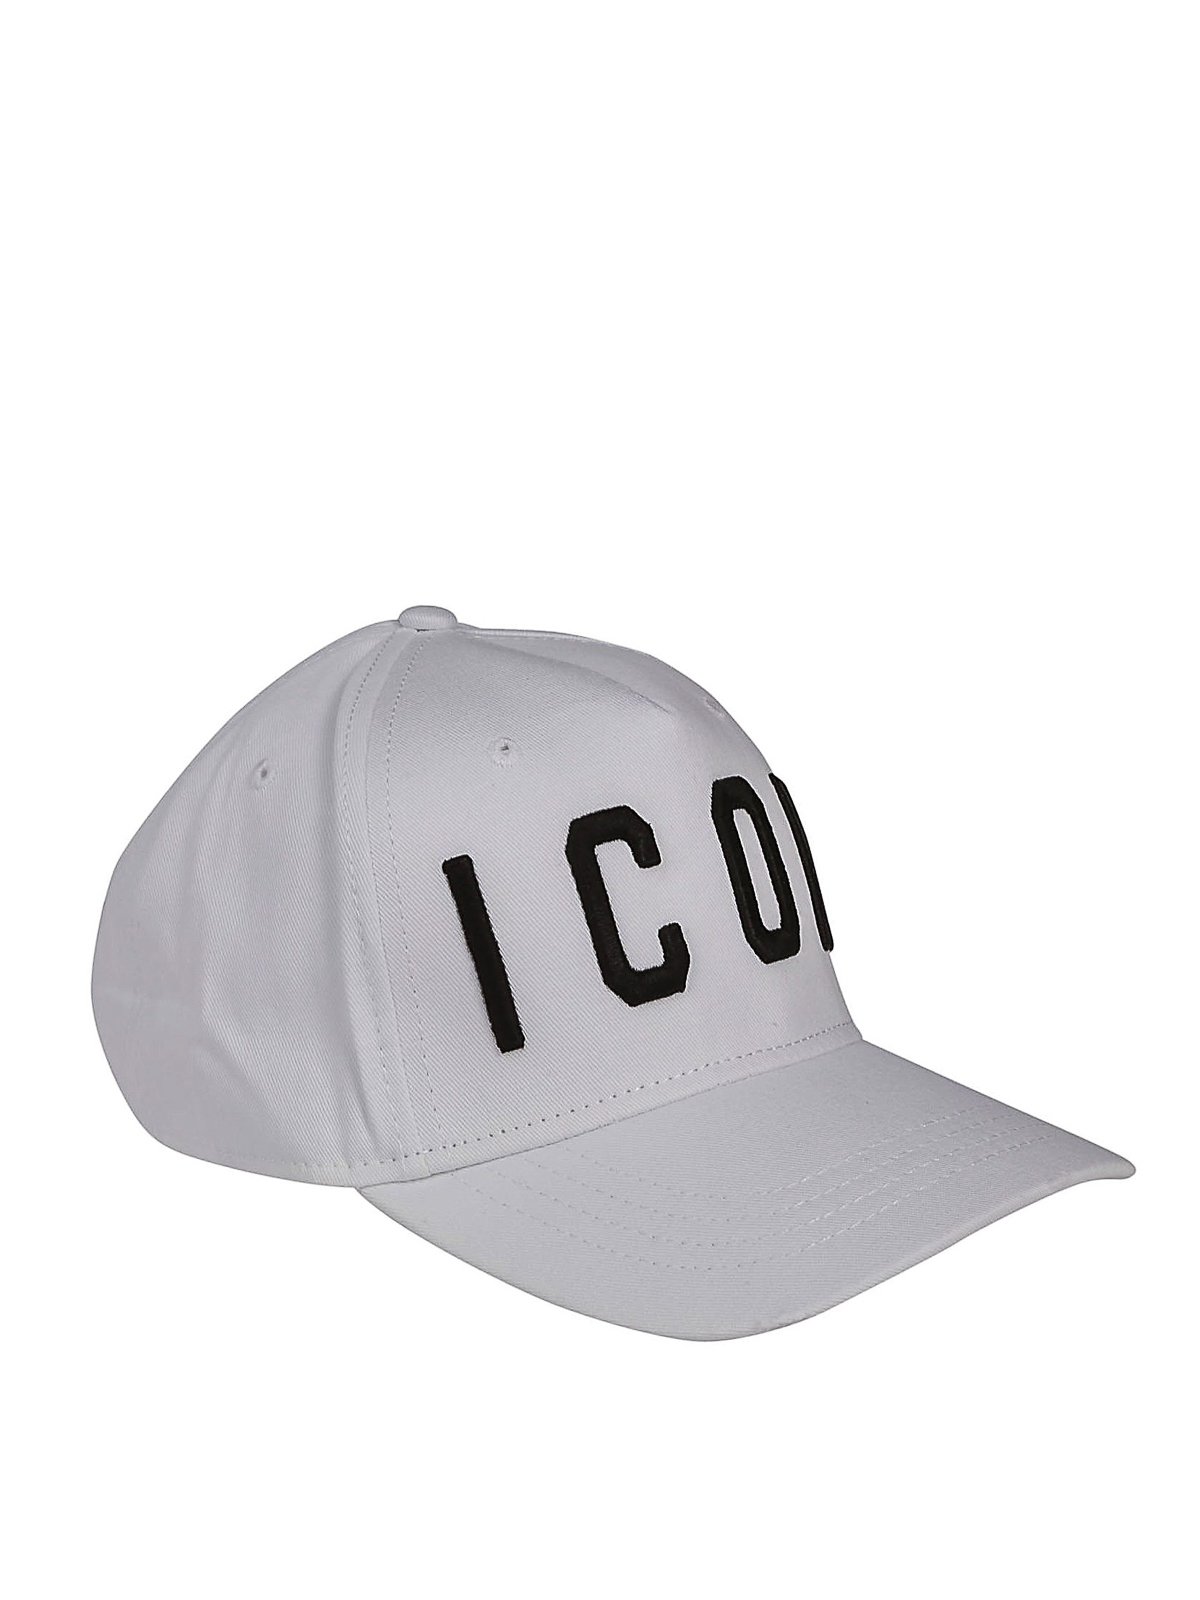 white icon cap